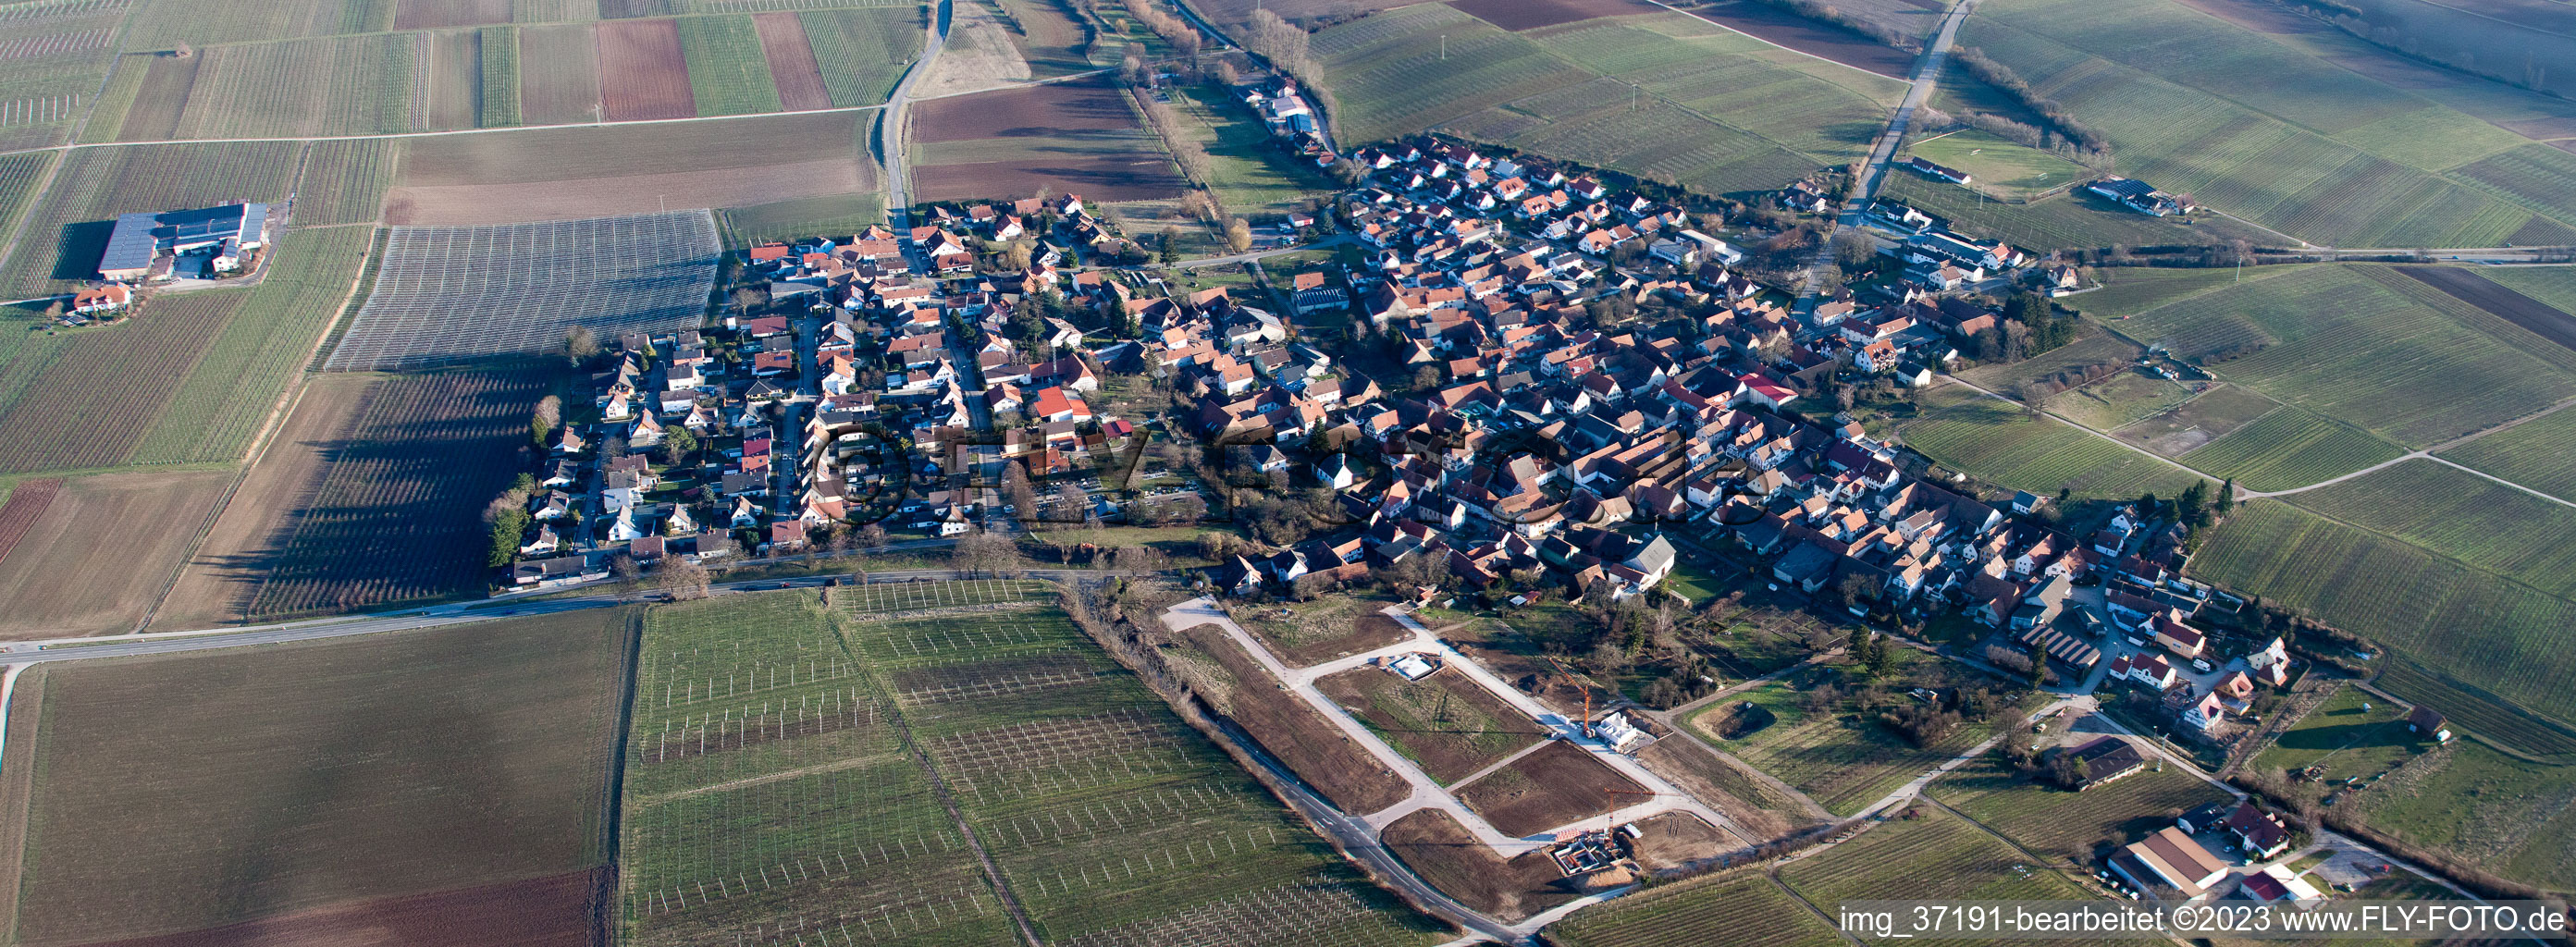 Impflingen dans le département Rhénanie-Palatinat, Allemagne vue d'en haut